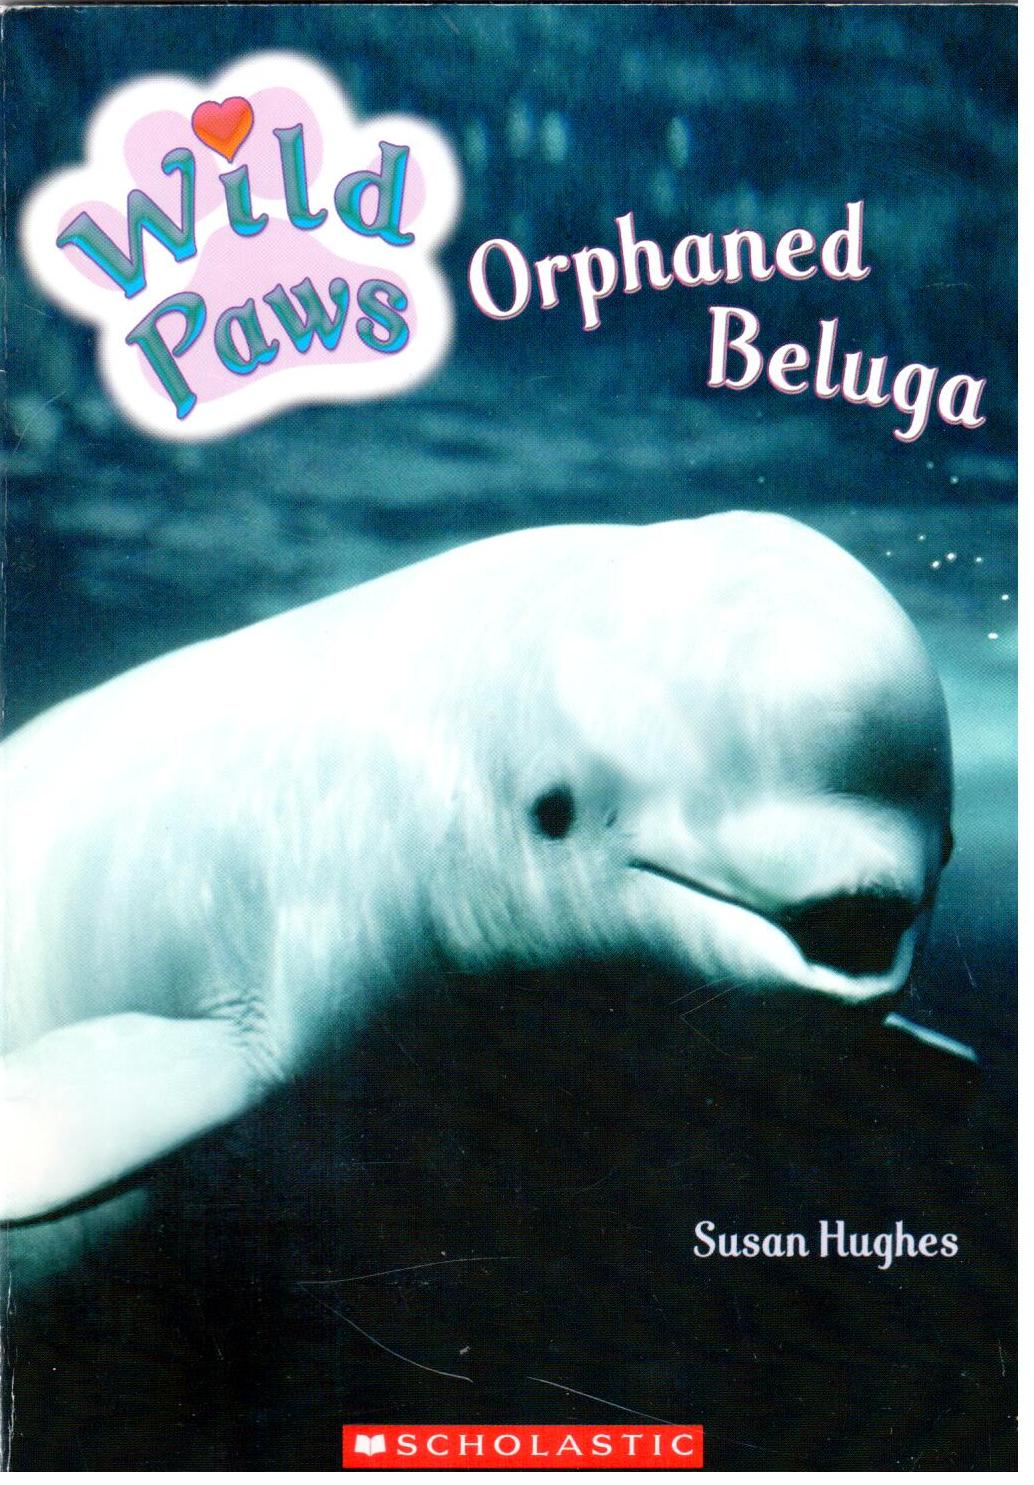 Orphaned beluga